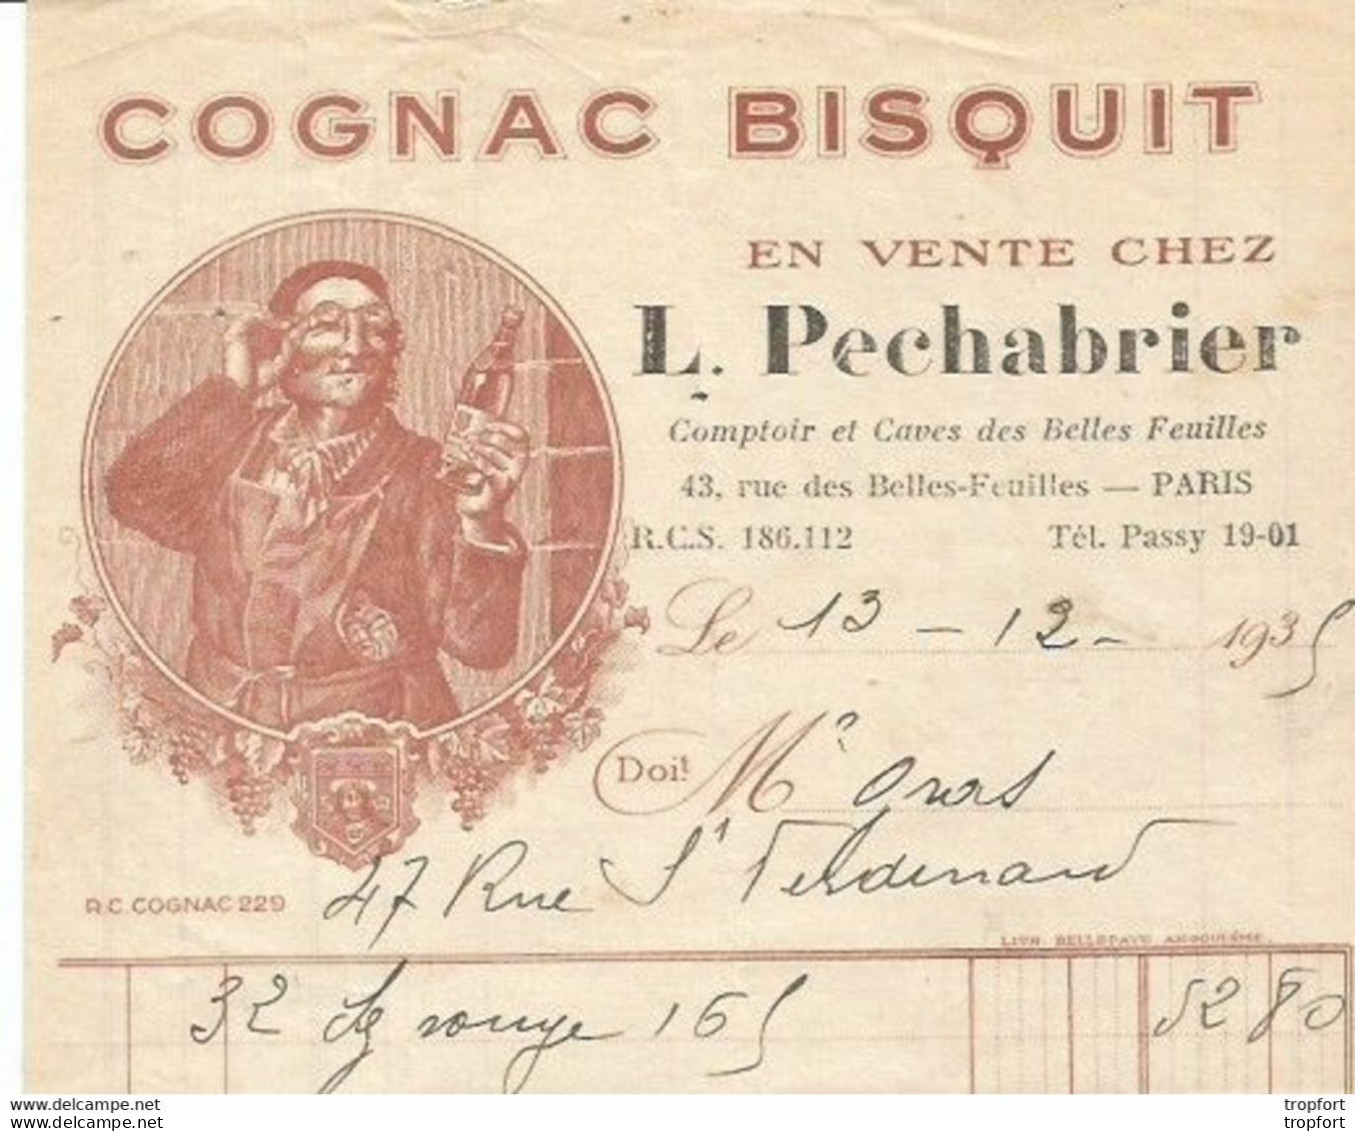 M11 Cpa / Old Invoice / Lettre Facture Ancienne 1935 COGNAC BISQUIT L Pechabrier PARIS - Old Professions